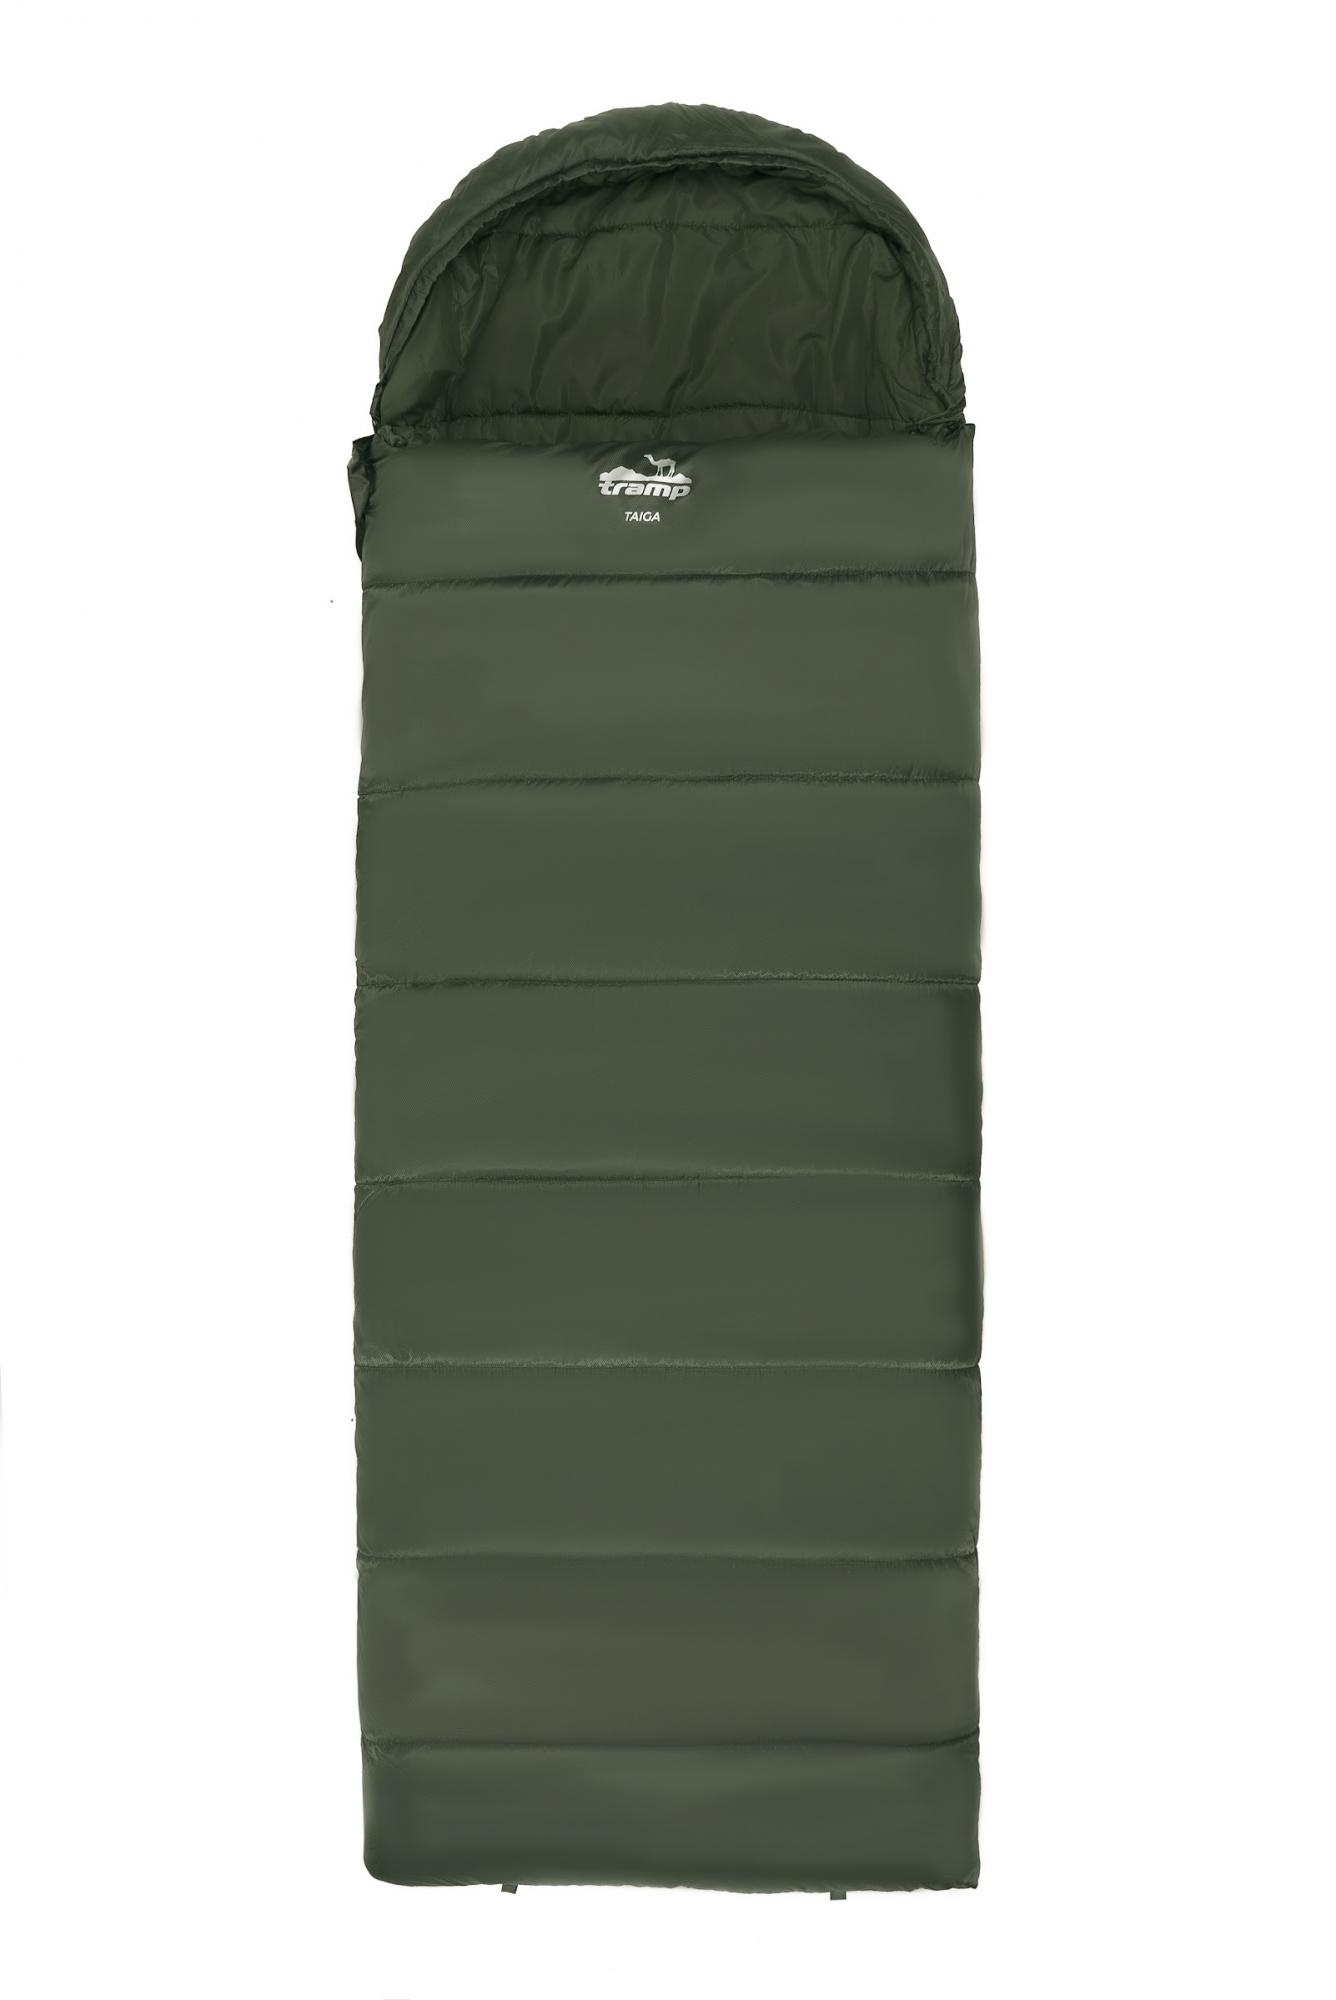 Спальный мешок одеяло Tramp Taiga 200XL 220*100 см (-5°C) - фото3